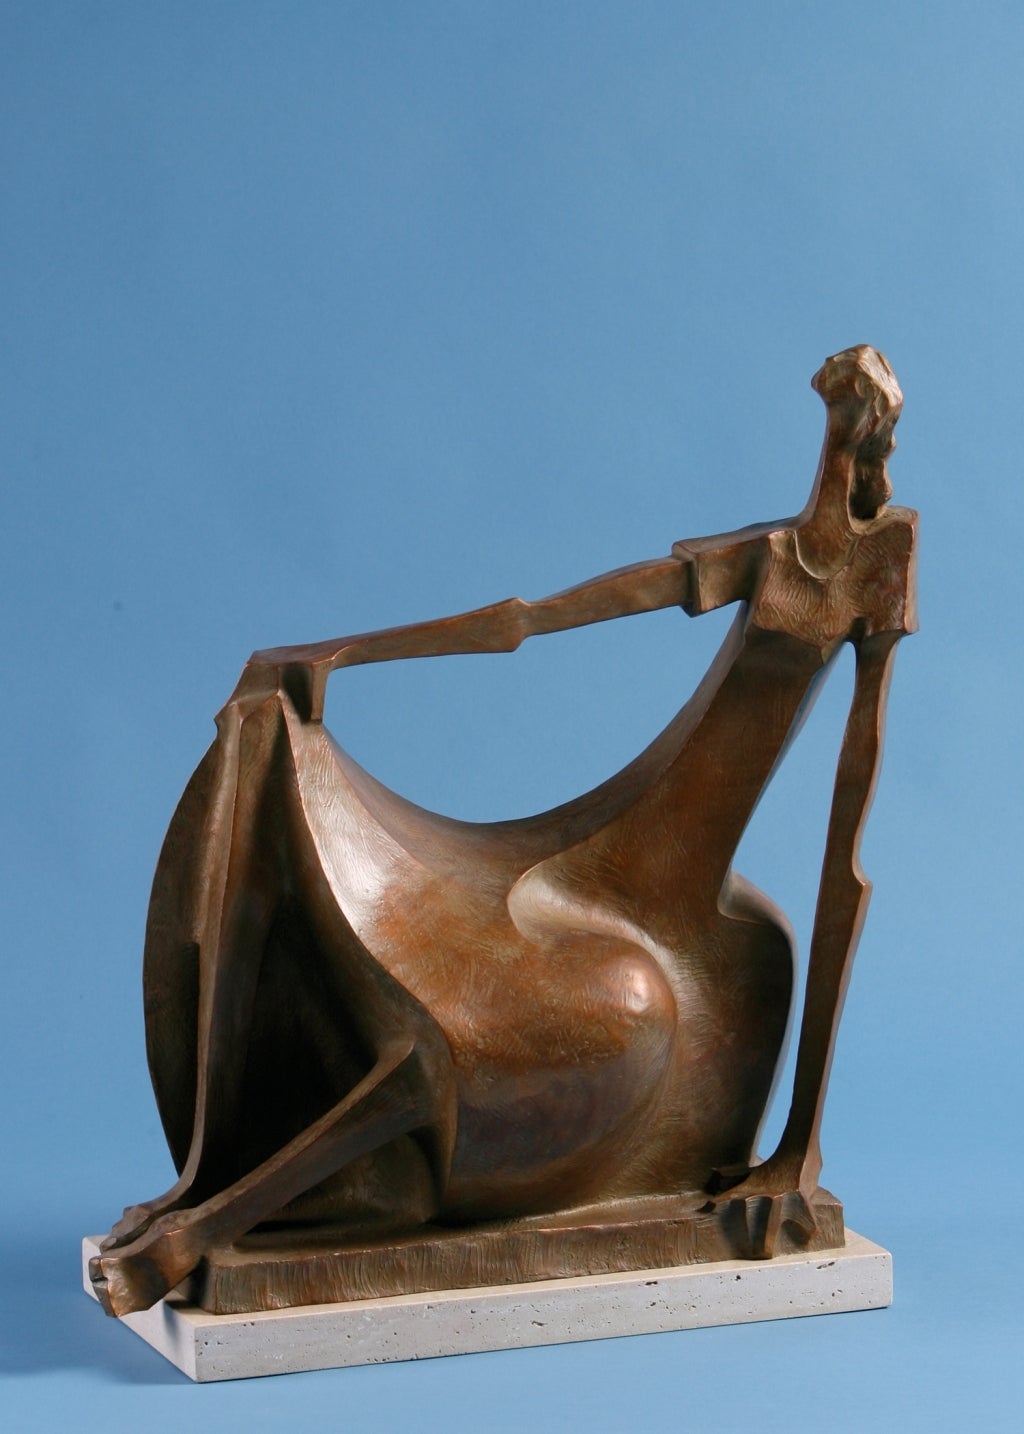 Zeitgenössische Bronzeskulptur „Millicent 5/12“ einer Frau in vollem Kleid – Sculpture von Wayne Salge